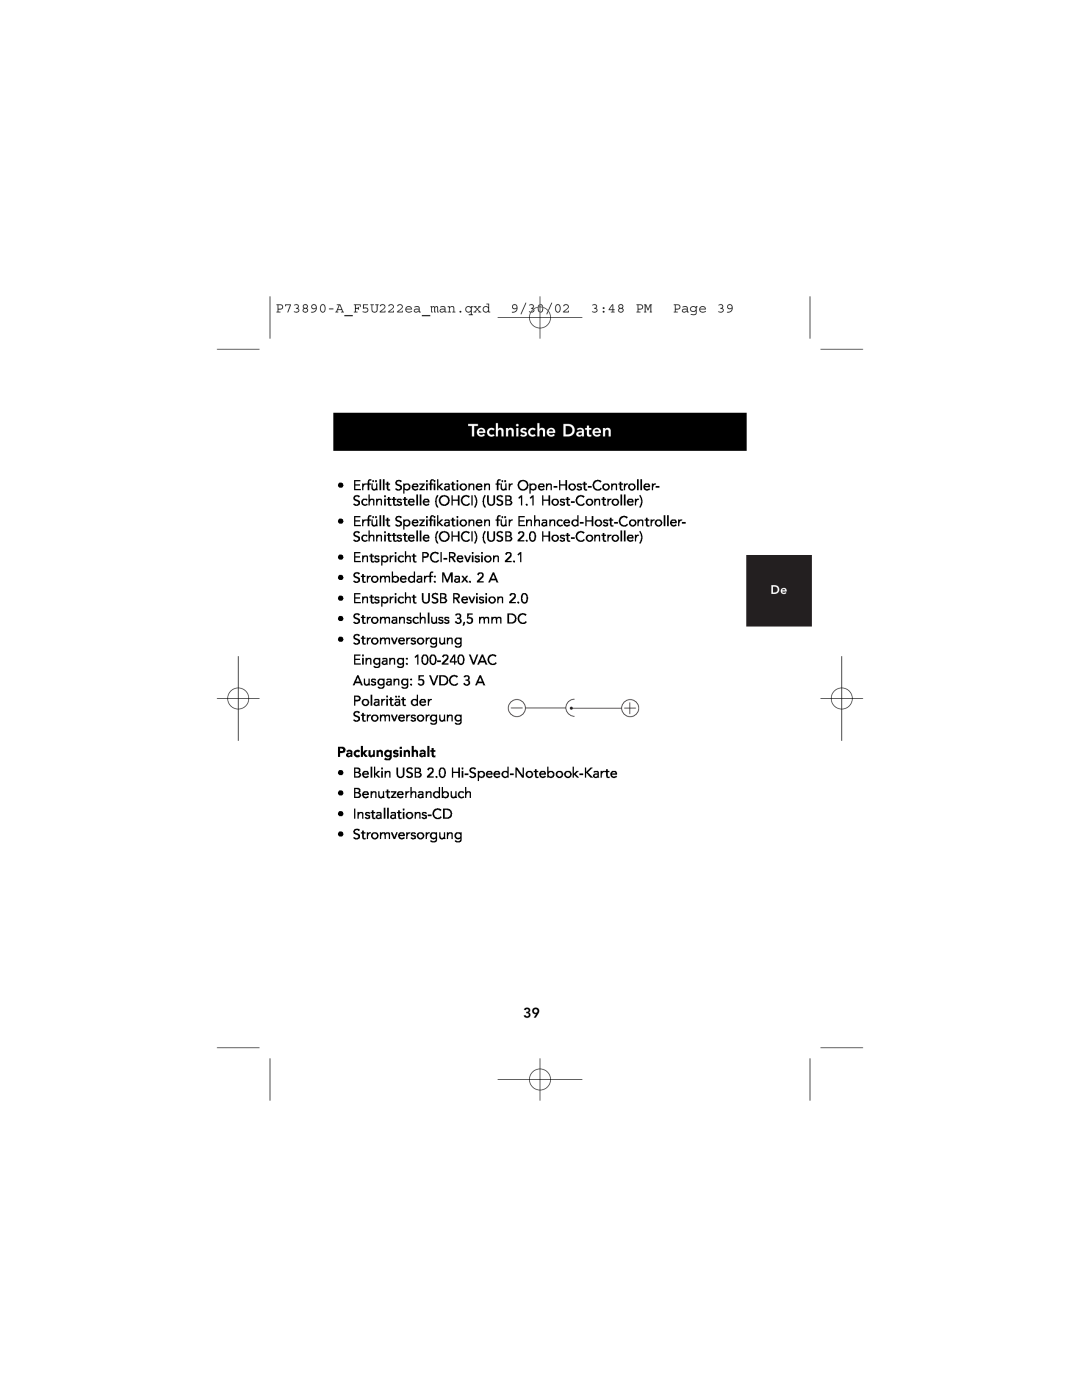 Belkin P73890EA-A manual Technische Daten 